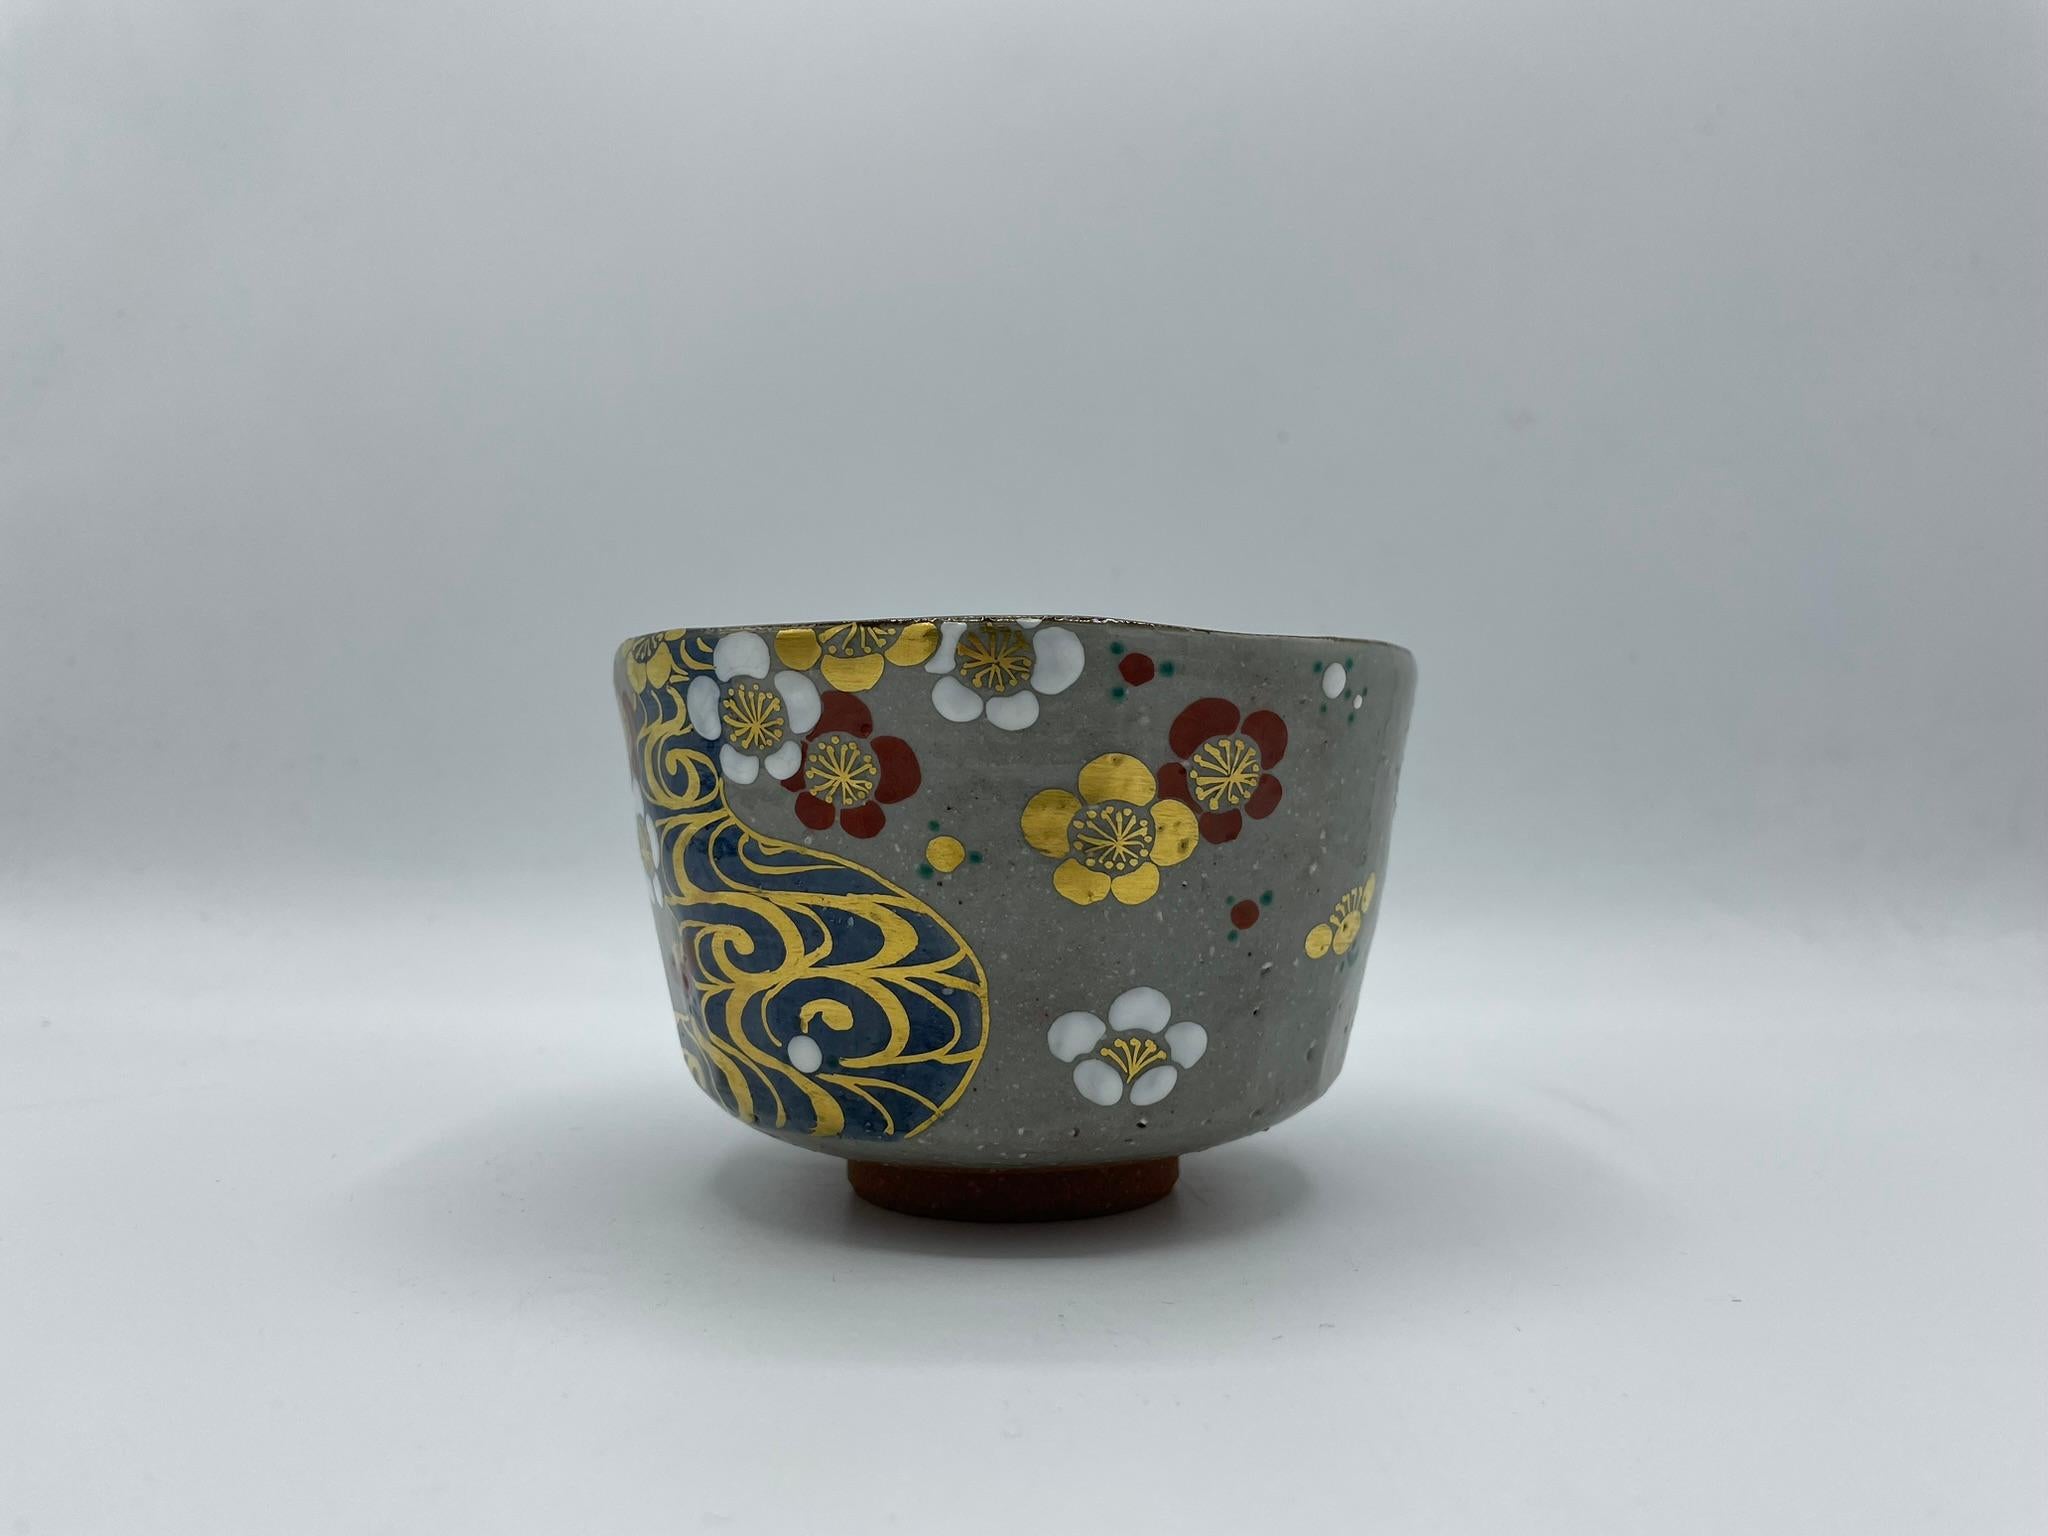 Dies ist eine Matcha-Schale, die wir für die Teezeremonie verwenden.
Diese Schale wurde in den 1970er Jahren in der Showa-Ära in Japan hergestellt.
Der Stil dieser Schale ist Hagi.
Hagi-Ware/ Hagi-yaki ist eine japanische Keramik, die traditionell